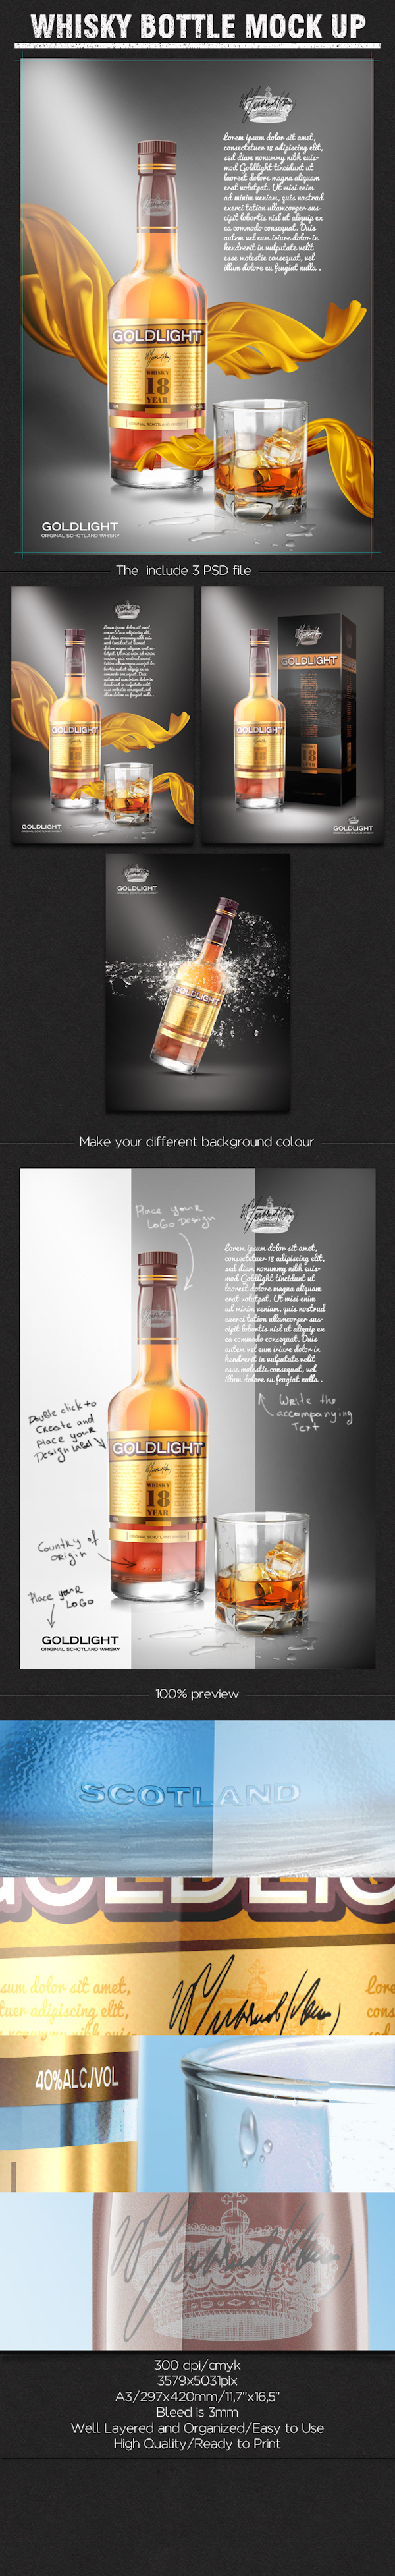 thiết kế bao bì sản phẩm mockup miễn phí hữu ích Whisky Bottle